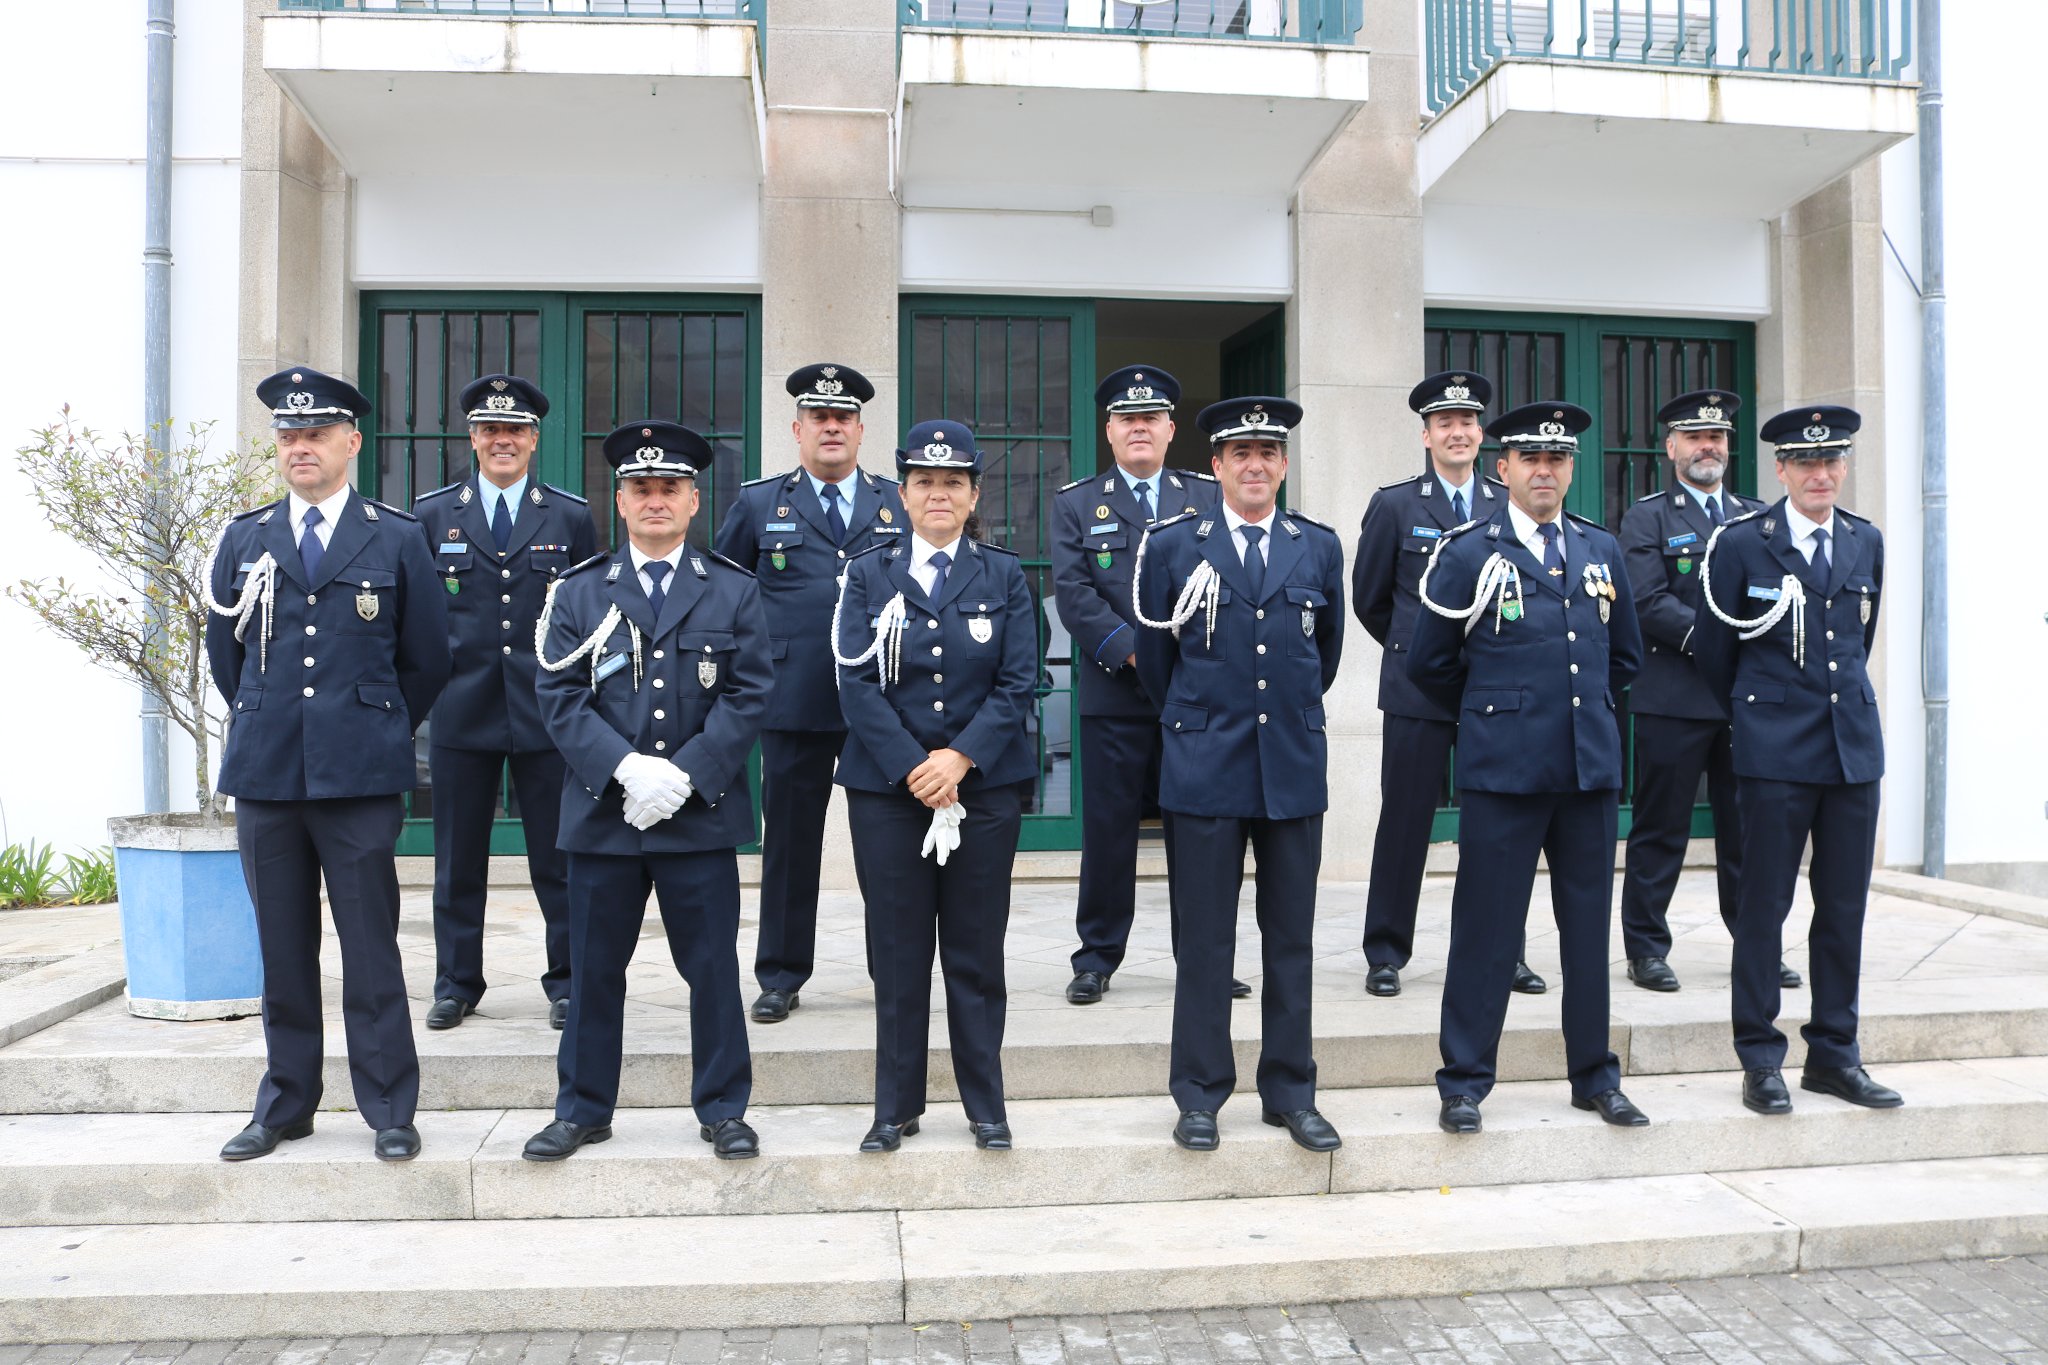 C/FOTOS: PSP de Viana do Castelo com novos “Chefe Coordenador” e “Agente Coordenador”